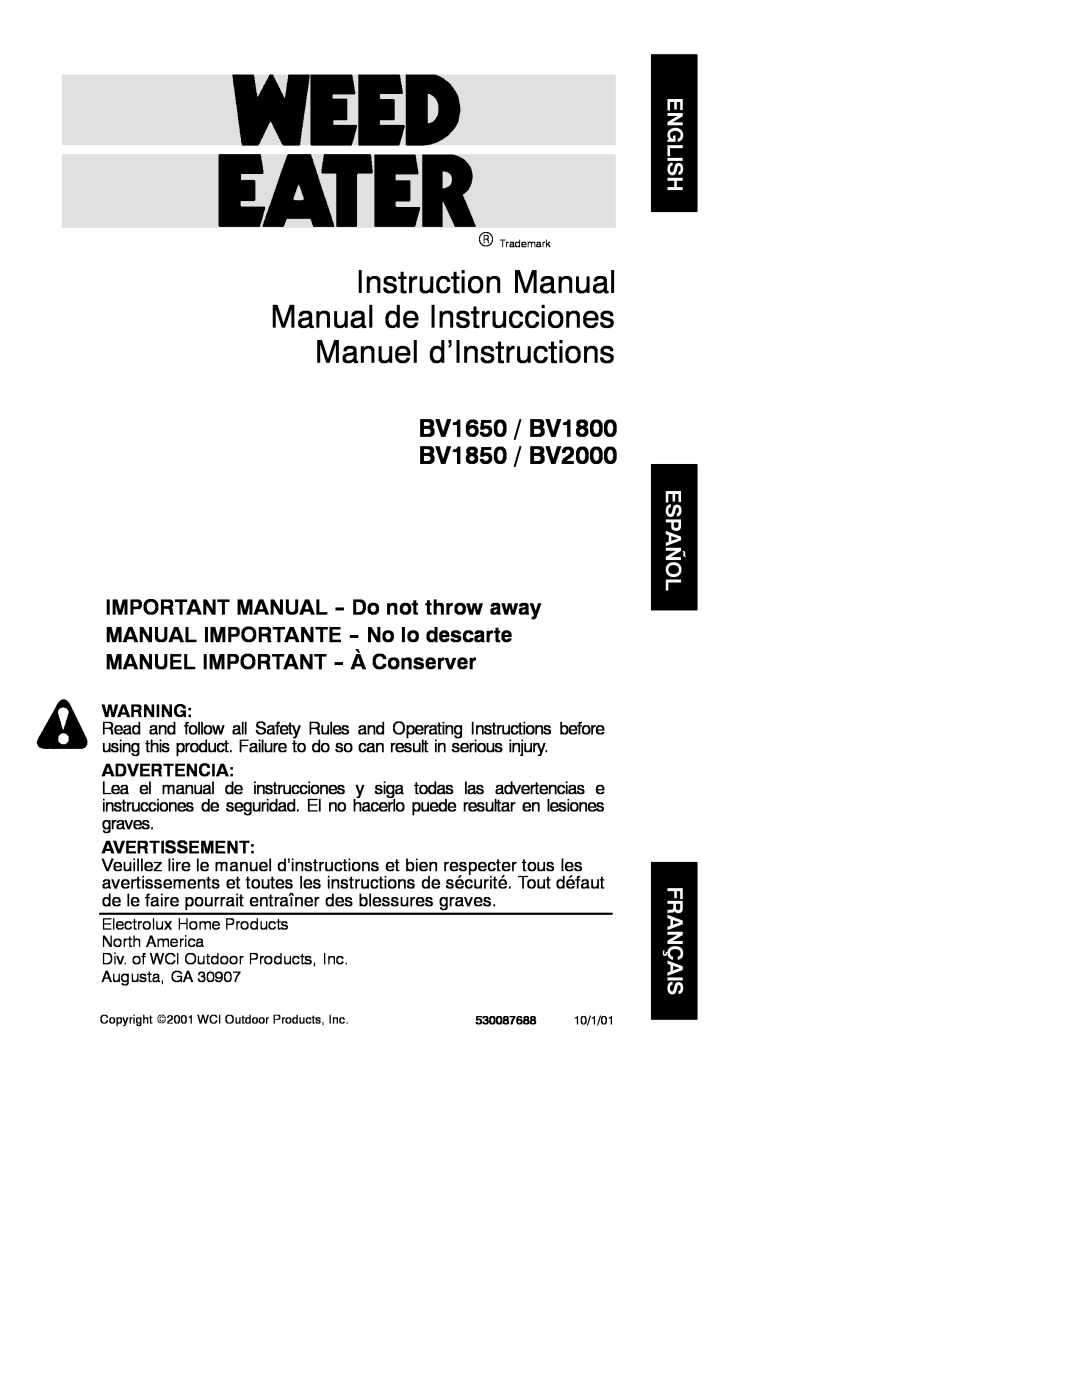 Weed Eater 530087688 instruction manual Manuel d’Instructions, BV1650 / BV1800 BV1850 / BV2000, Advertencia, Avertissement 